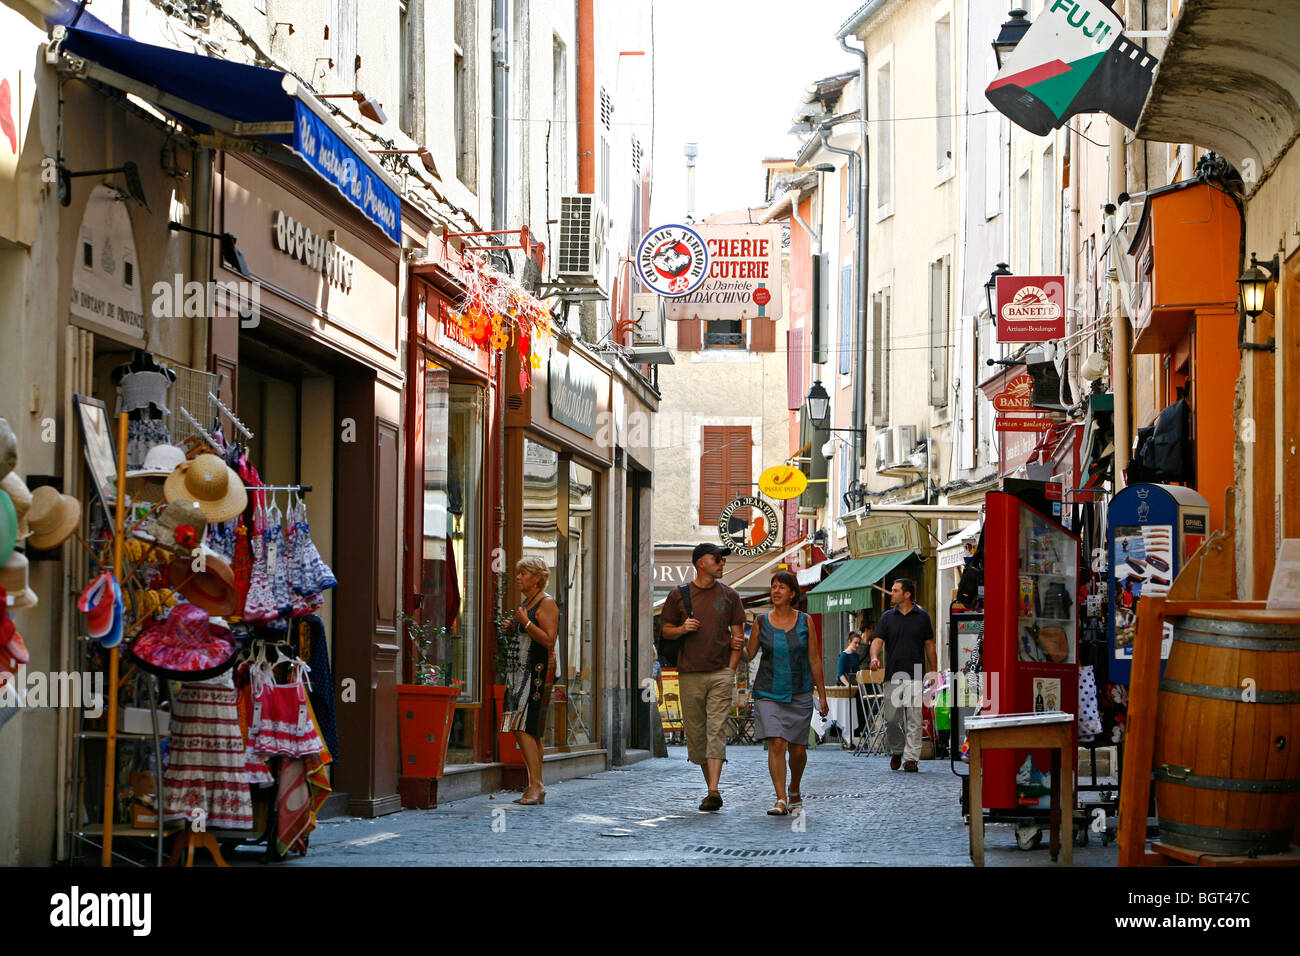 Scena di strada, l'Isle sur la Sorgue, Vaucluse Provence, Francia. Foto Stock